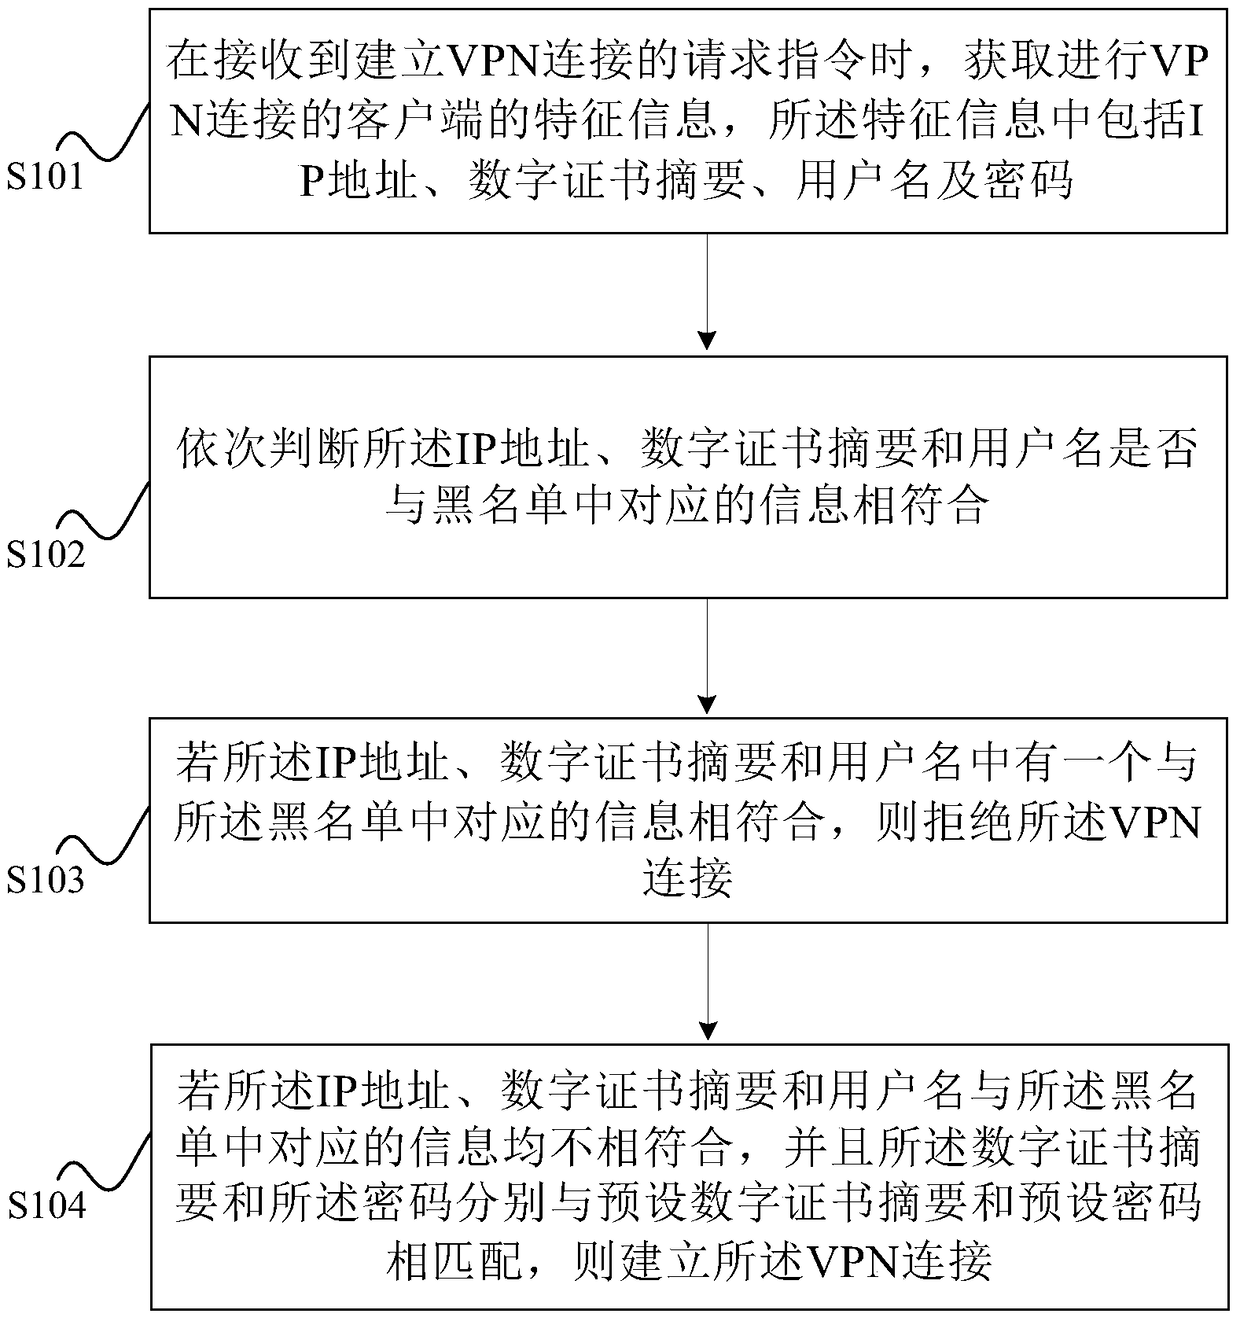 A kind of vpn connection method and system based on blacklist mechanism